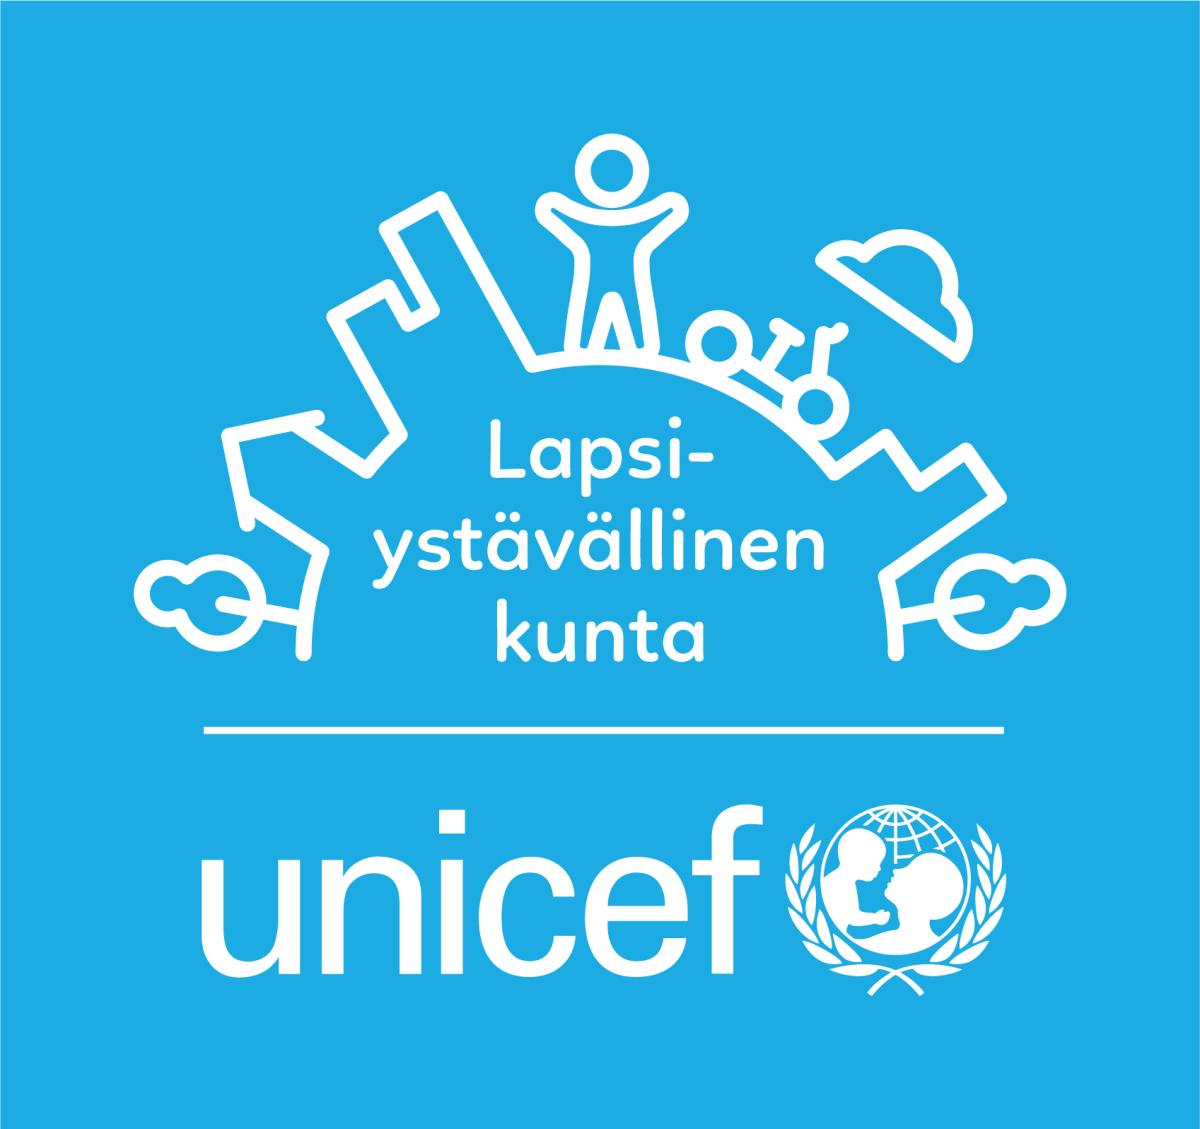 Lapsiystävällinen kunta -logo valkoisena sinisellä taustalla, pystyversio